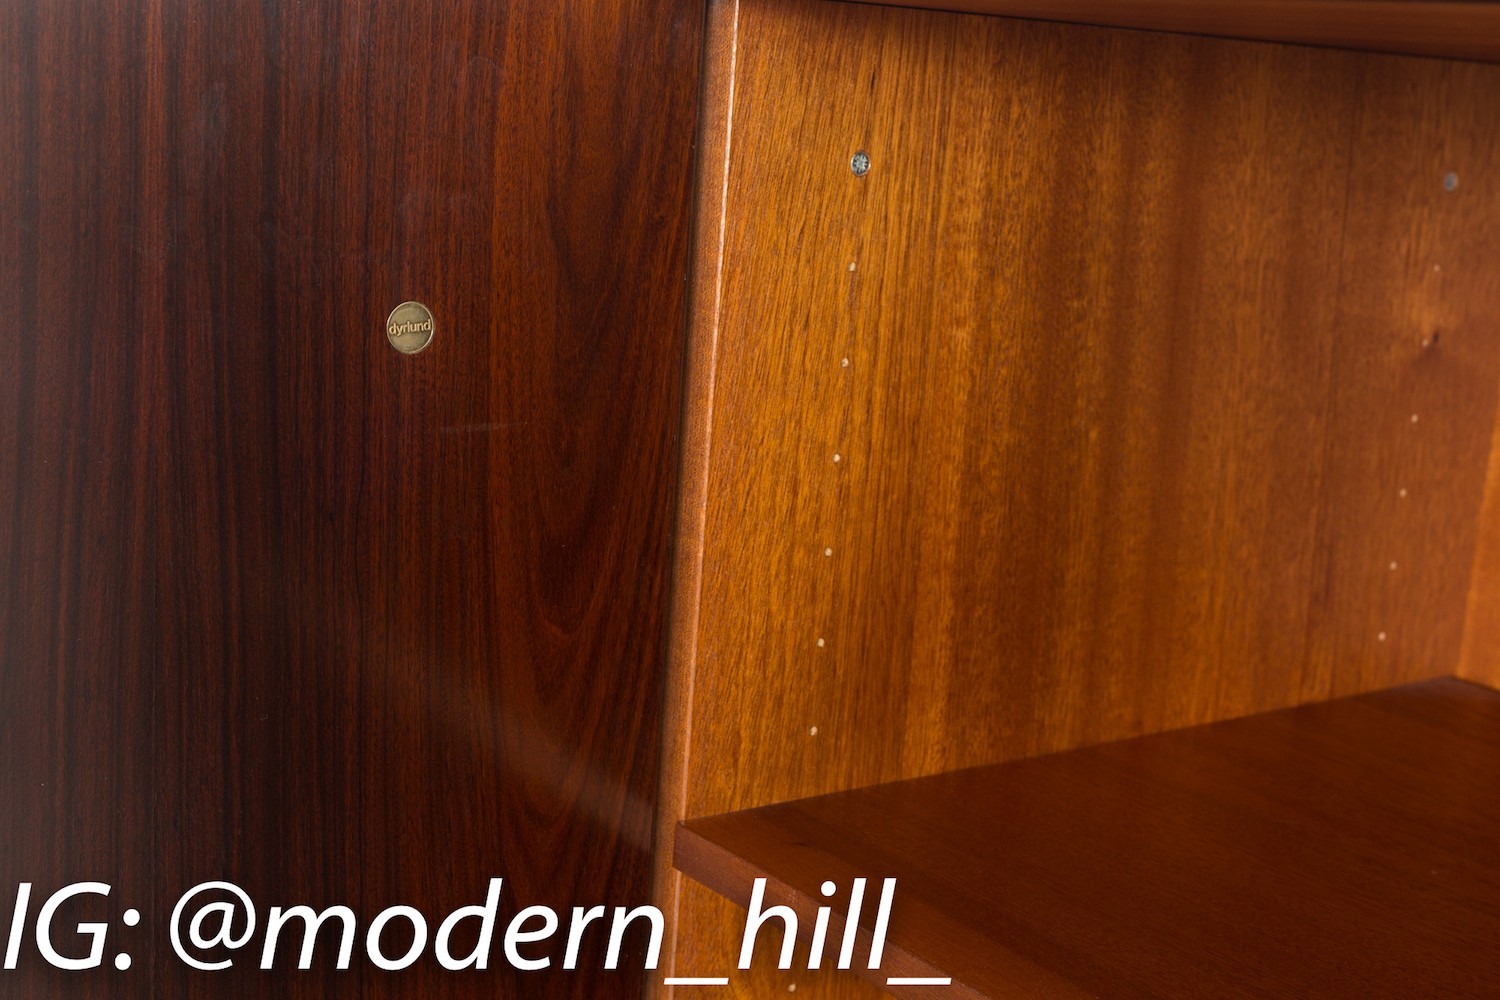 Dyrlund Rosewood Mid Century Armoire Gentlesmans Chest Highboy Dresser